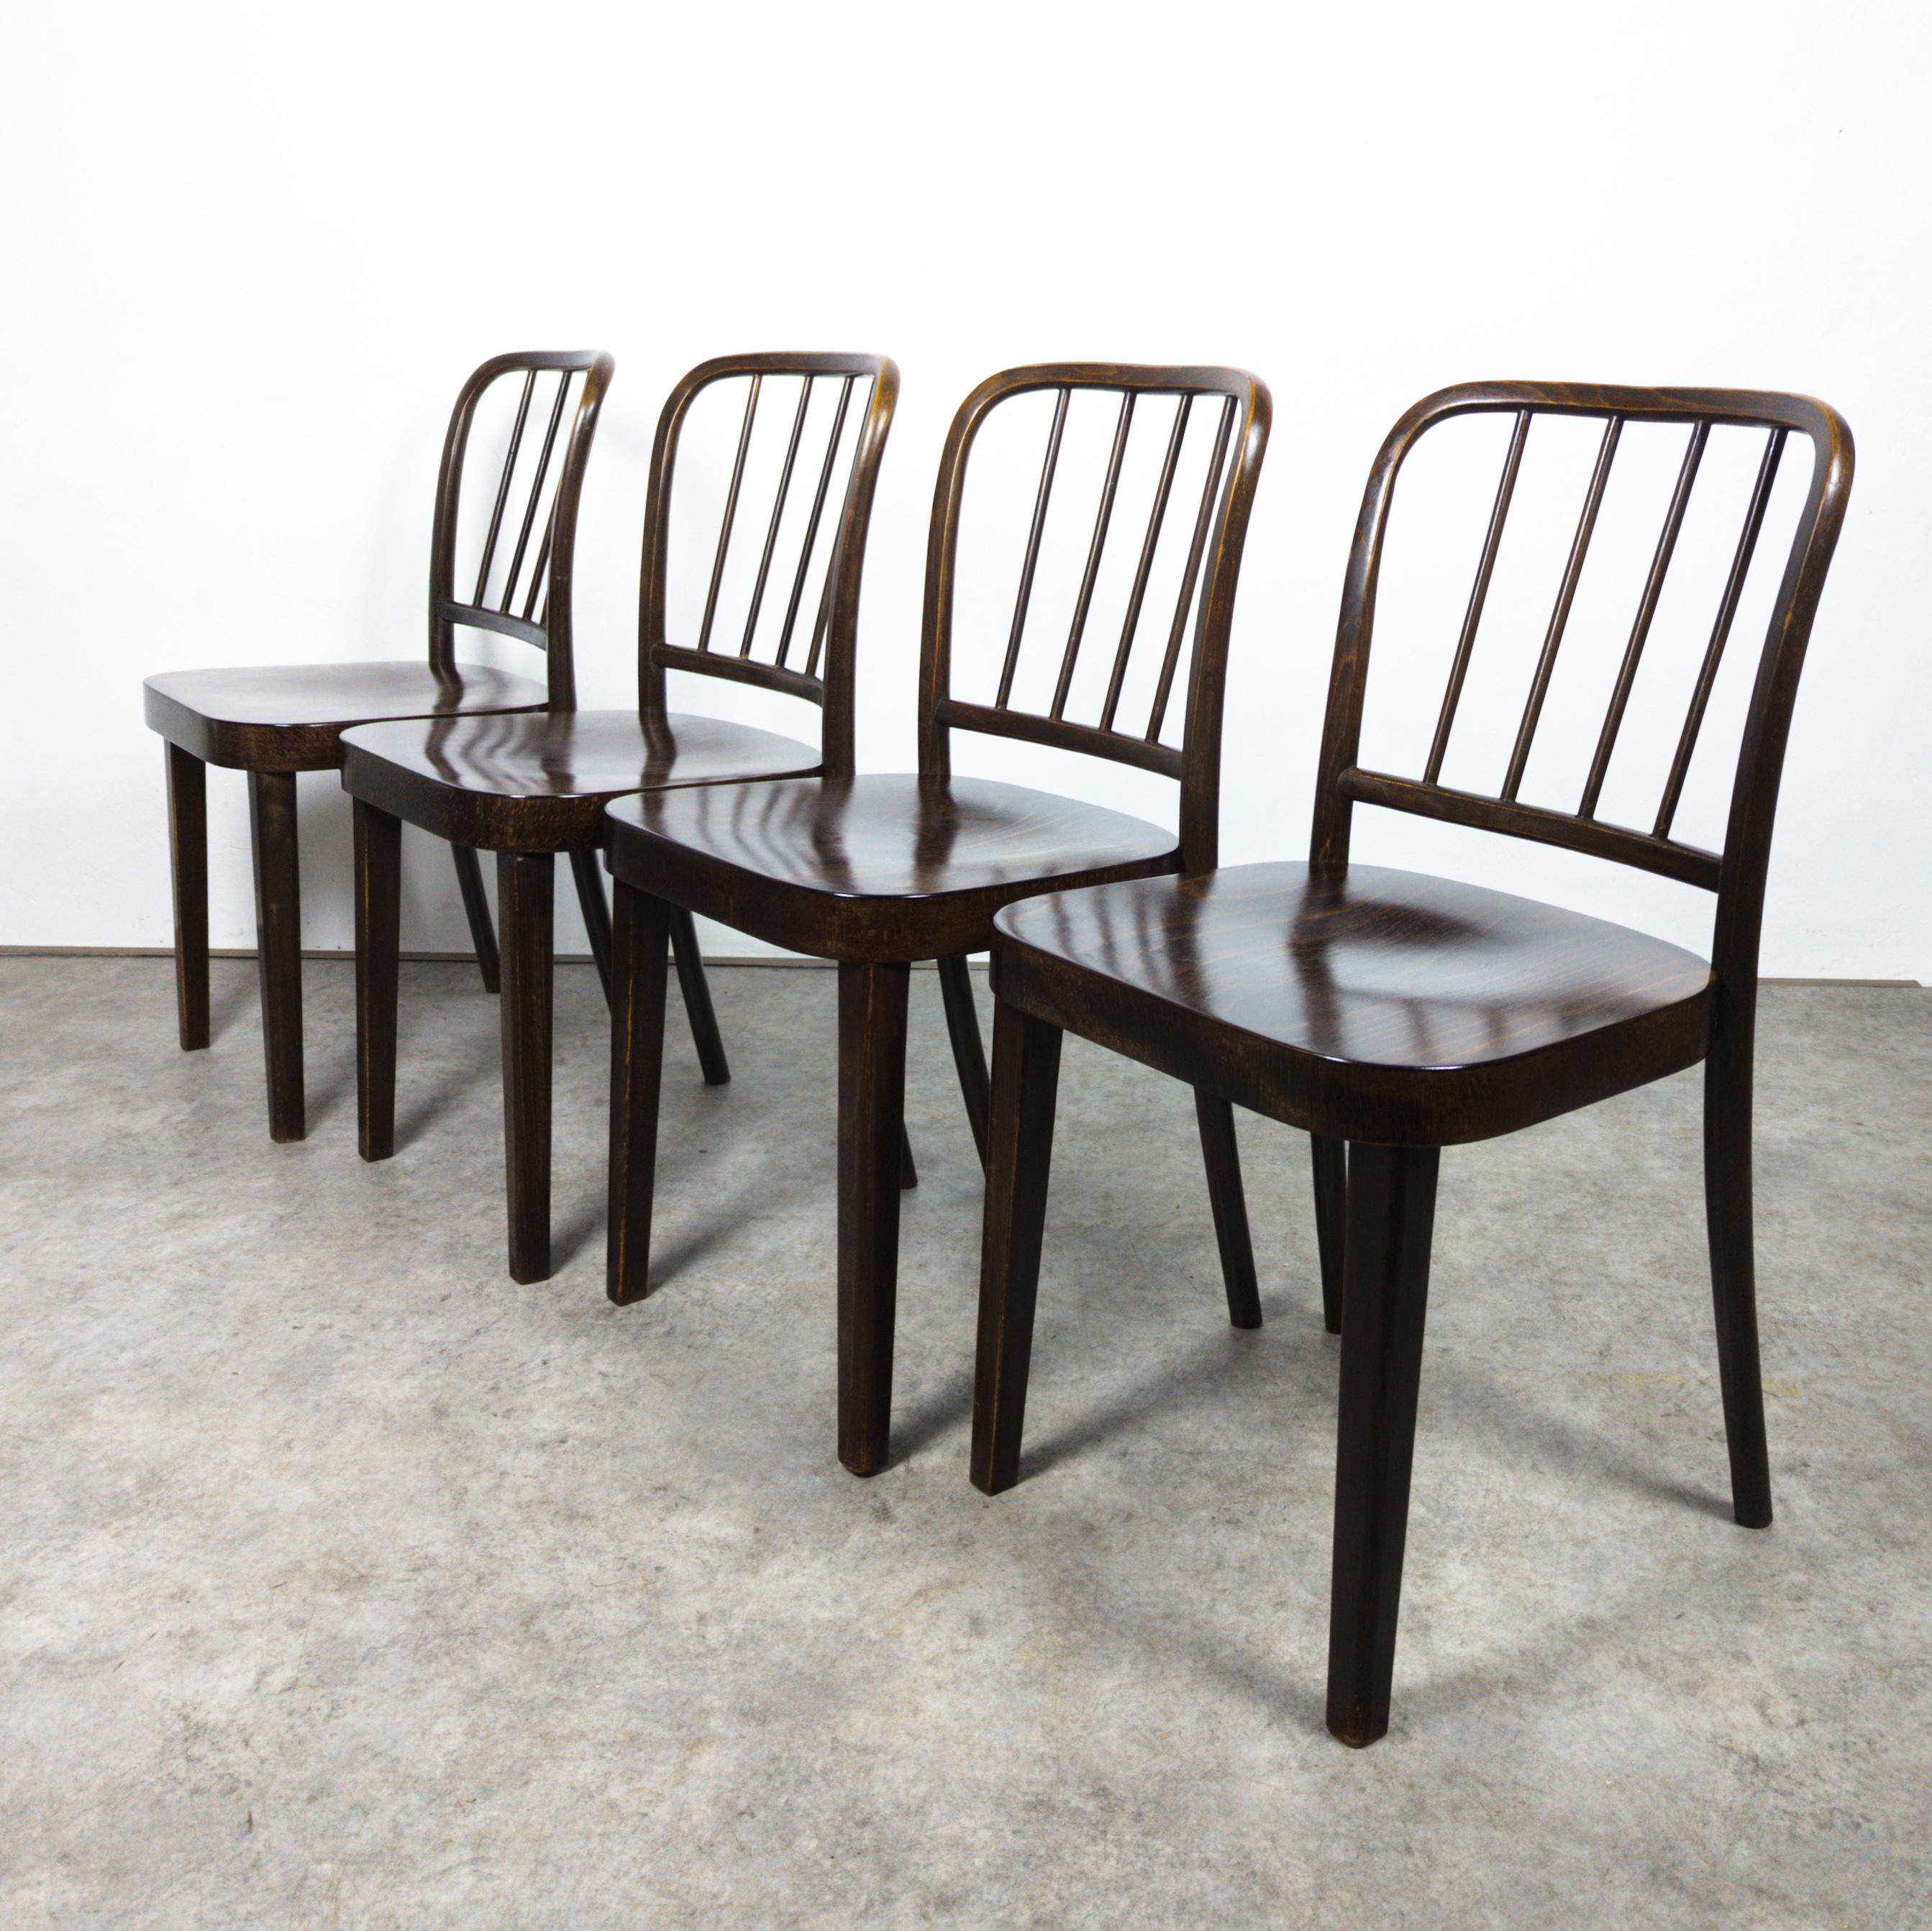 Satz von vier sehr seltenen Stühlen von Josef Hoffmann aus dem Jahr 1932, Version A 811/4, aus lackiertem Buchenholz. Die Stühle behalten ihren ursprünglichen Charme mit einer reizvollen Patina, wobei alle vier Sitze fachmännisch aufgearbeitet